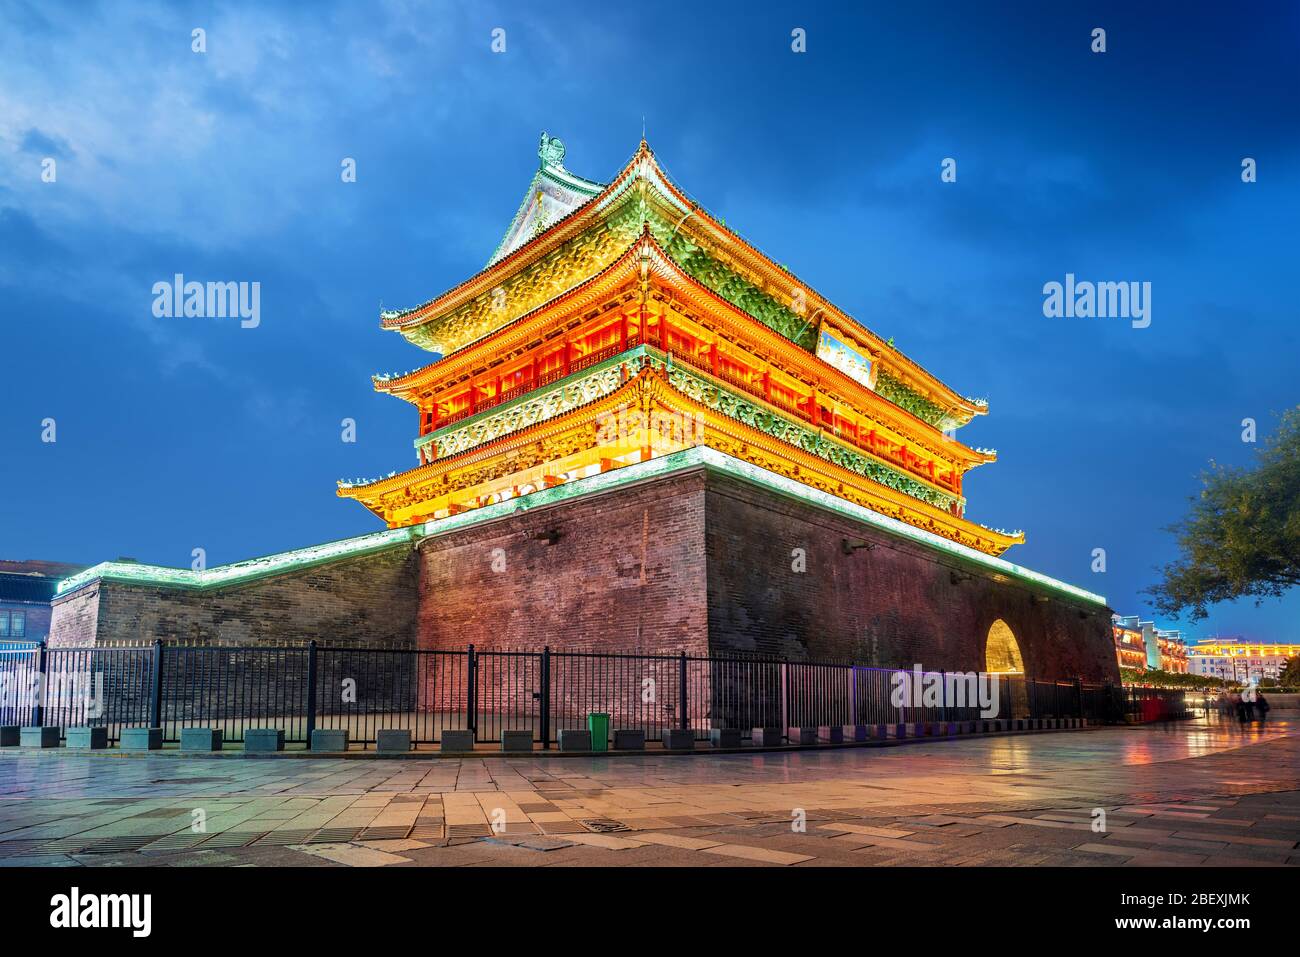 Xi'an ist eine Drum Tower eine berühmte Alte architektonische Wahrzeichen. Übersetzung: "Zivile und militärische Beamte erfassen' Stockfoto